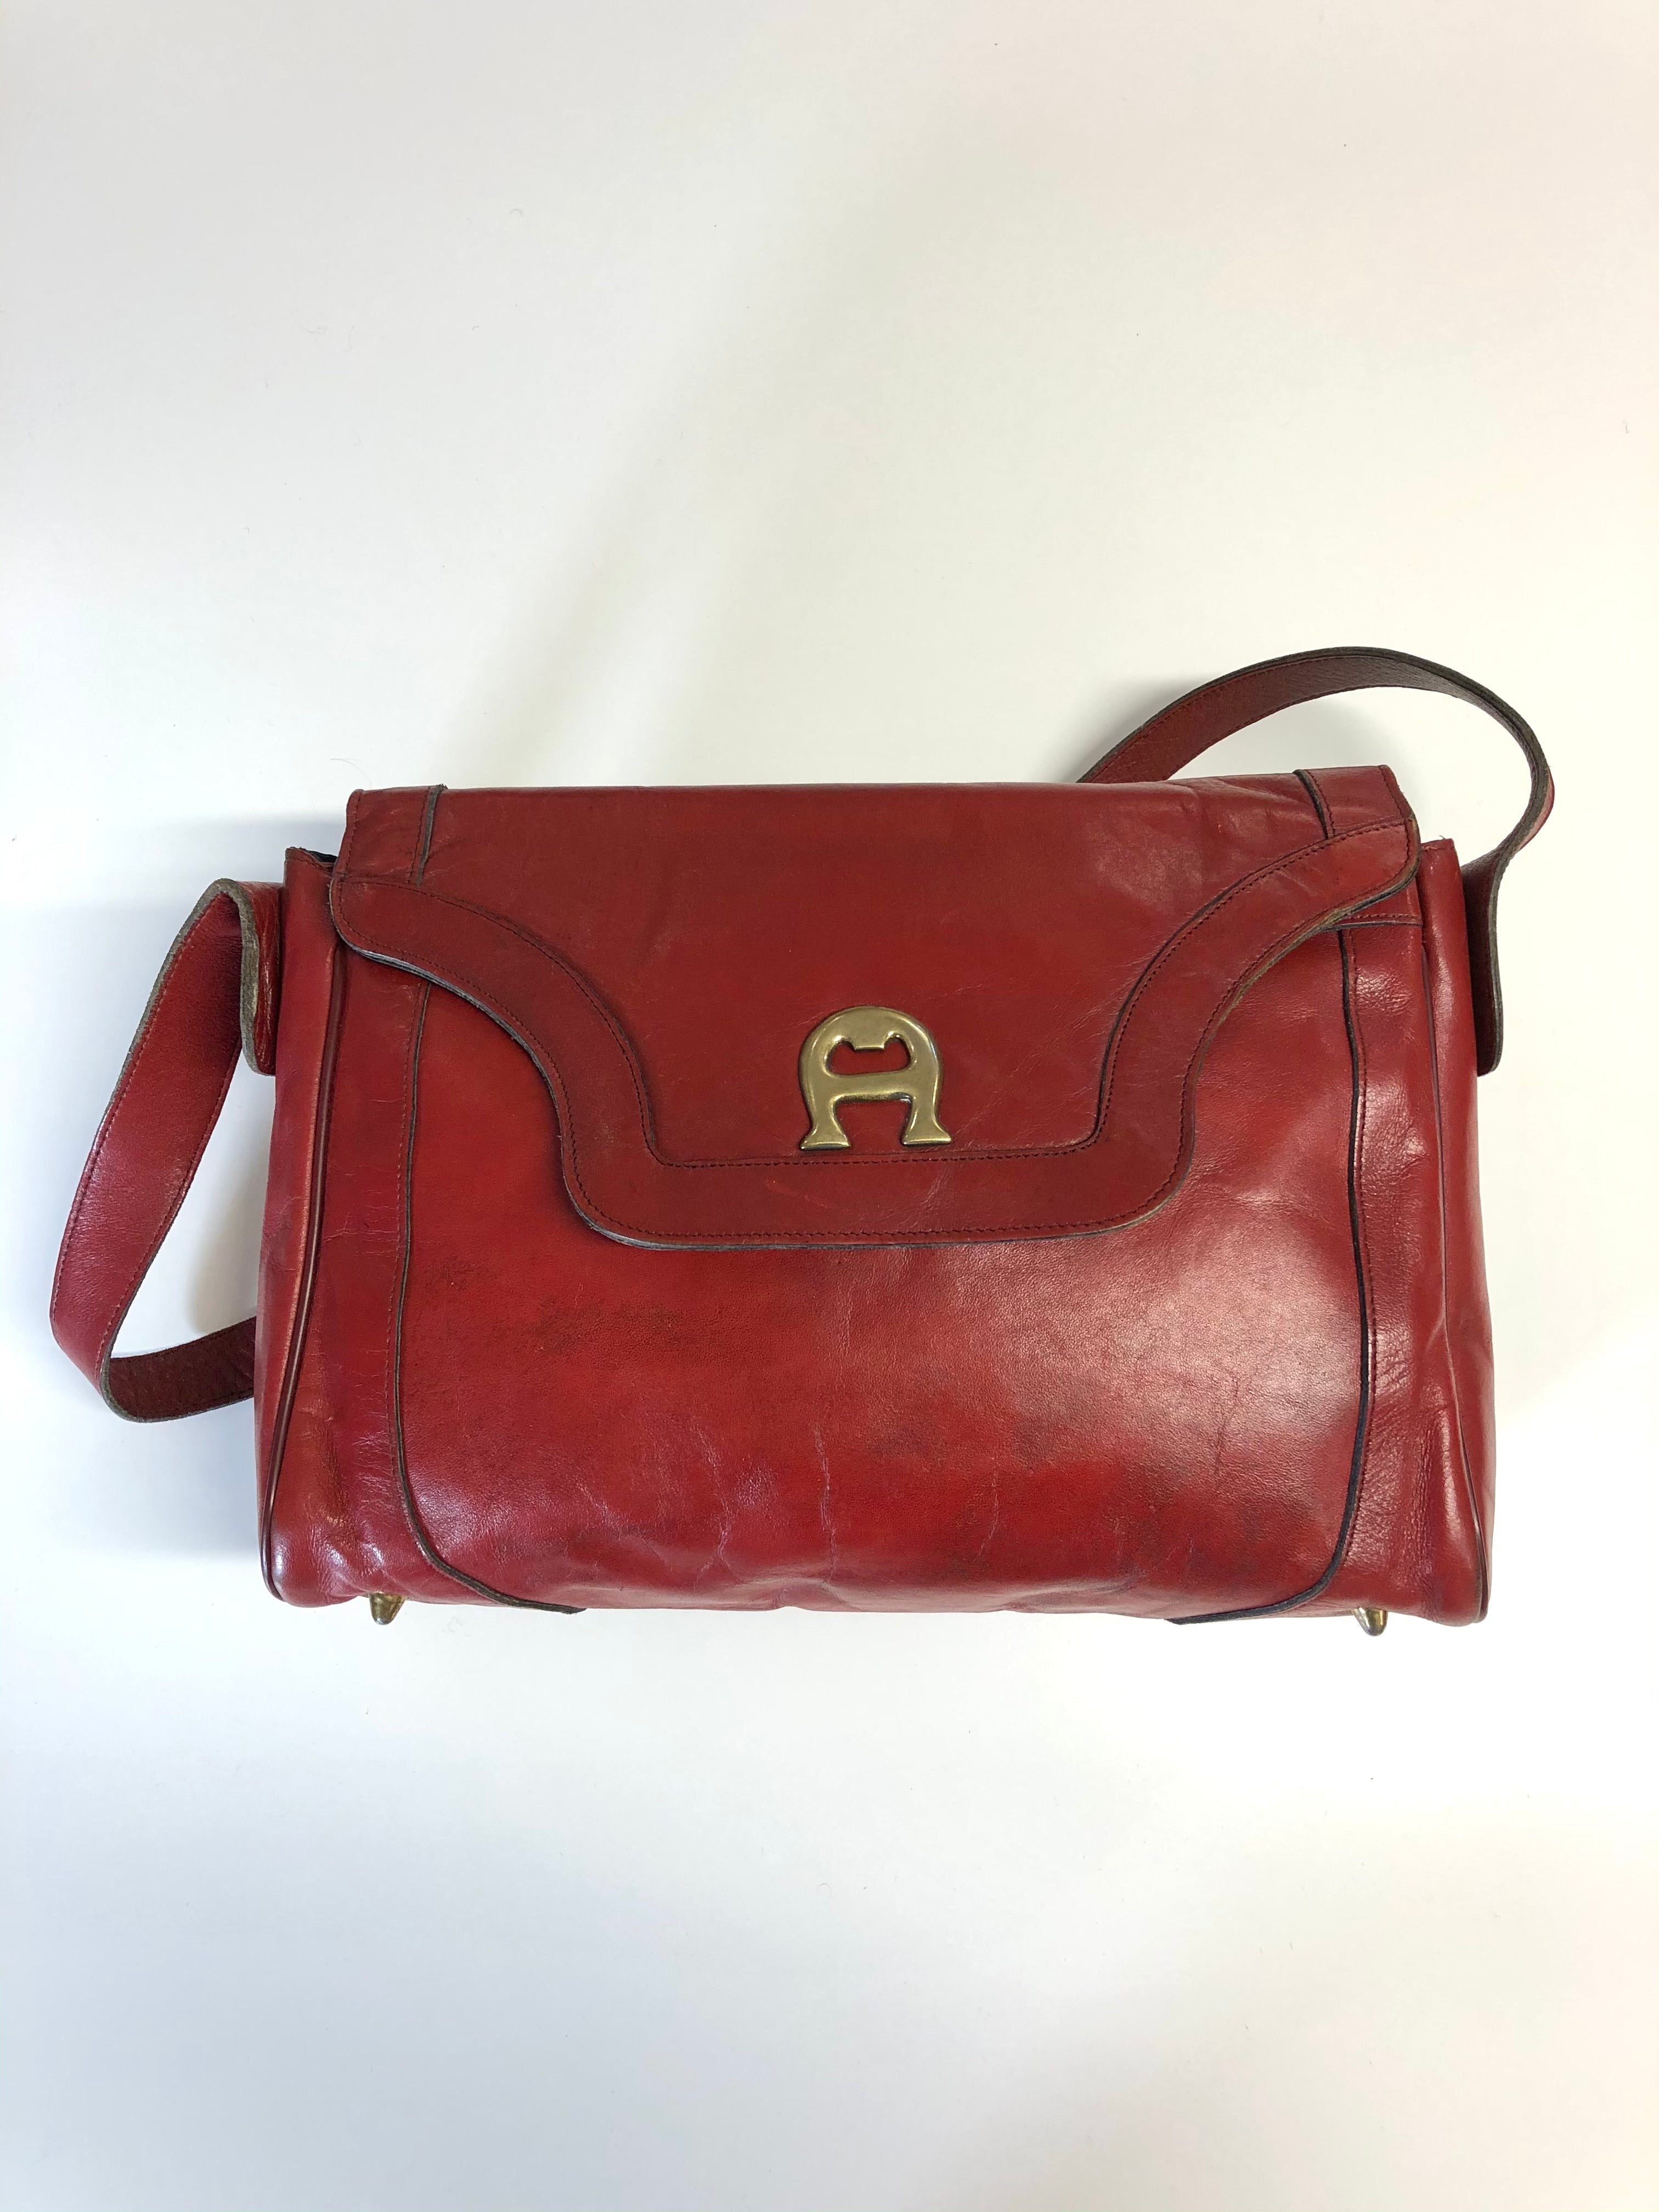 attribut Morgenøvelser Luminans vintage large Aigner oxblood leather handbag 70s – hong kong vintage